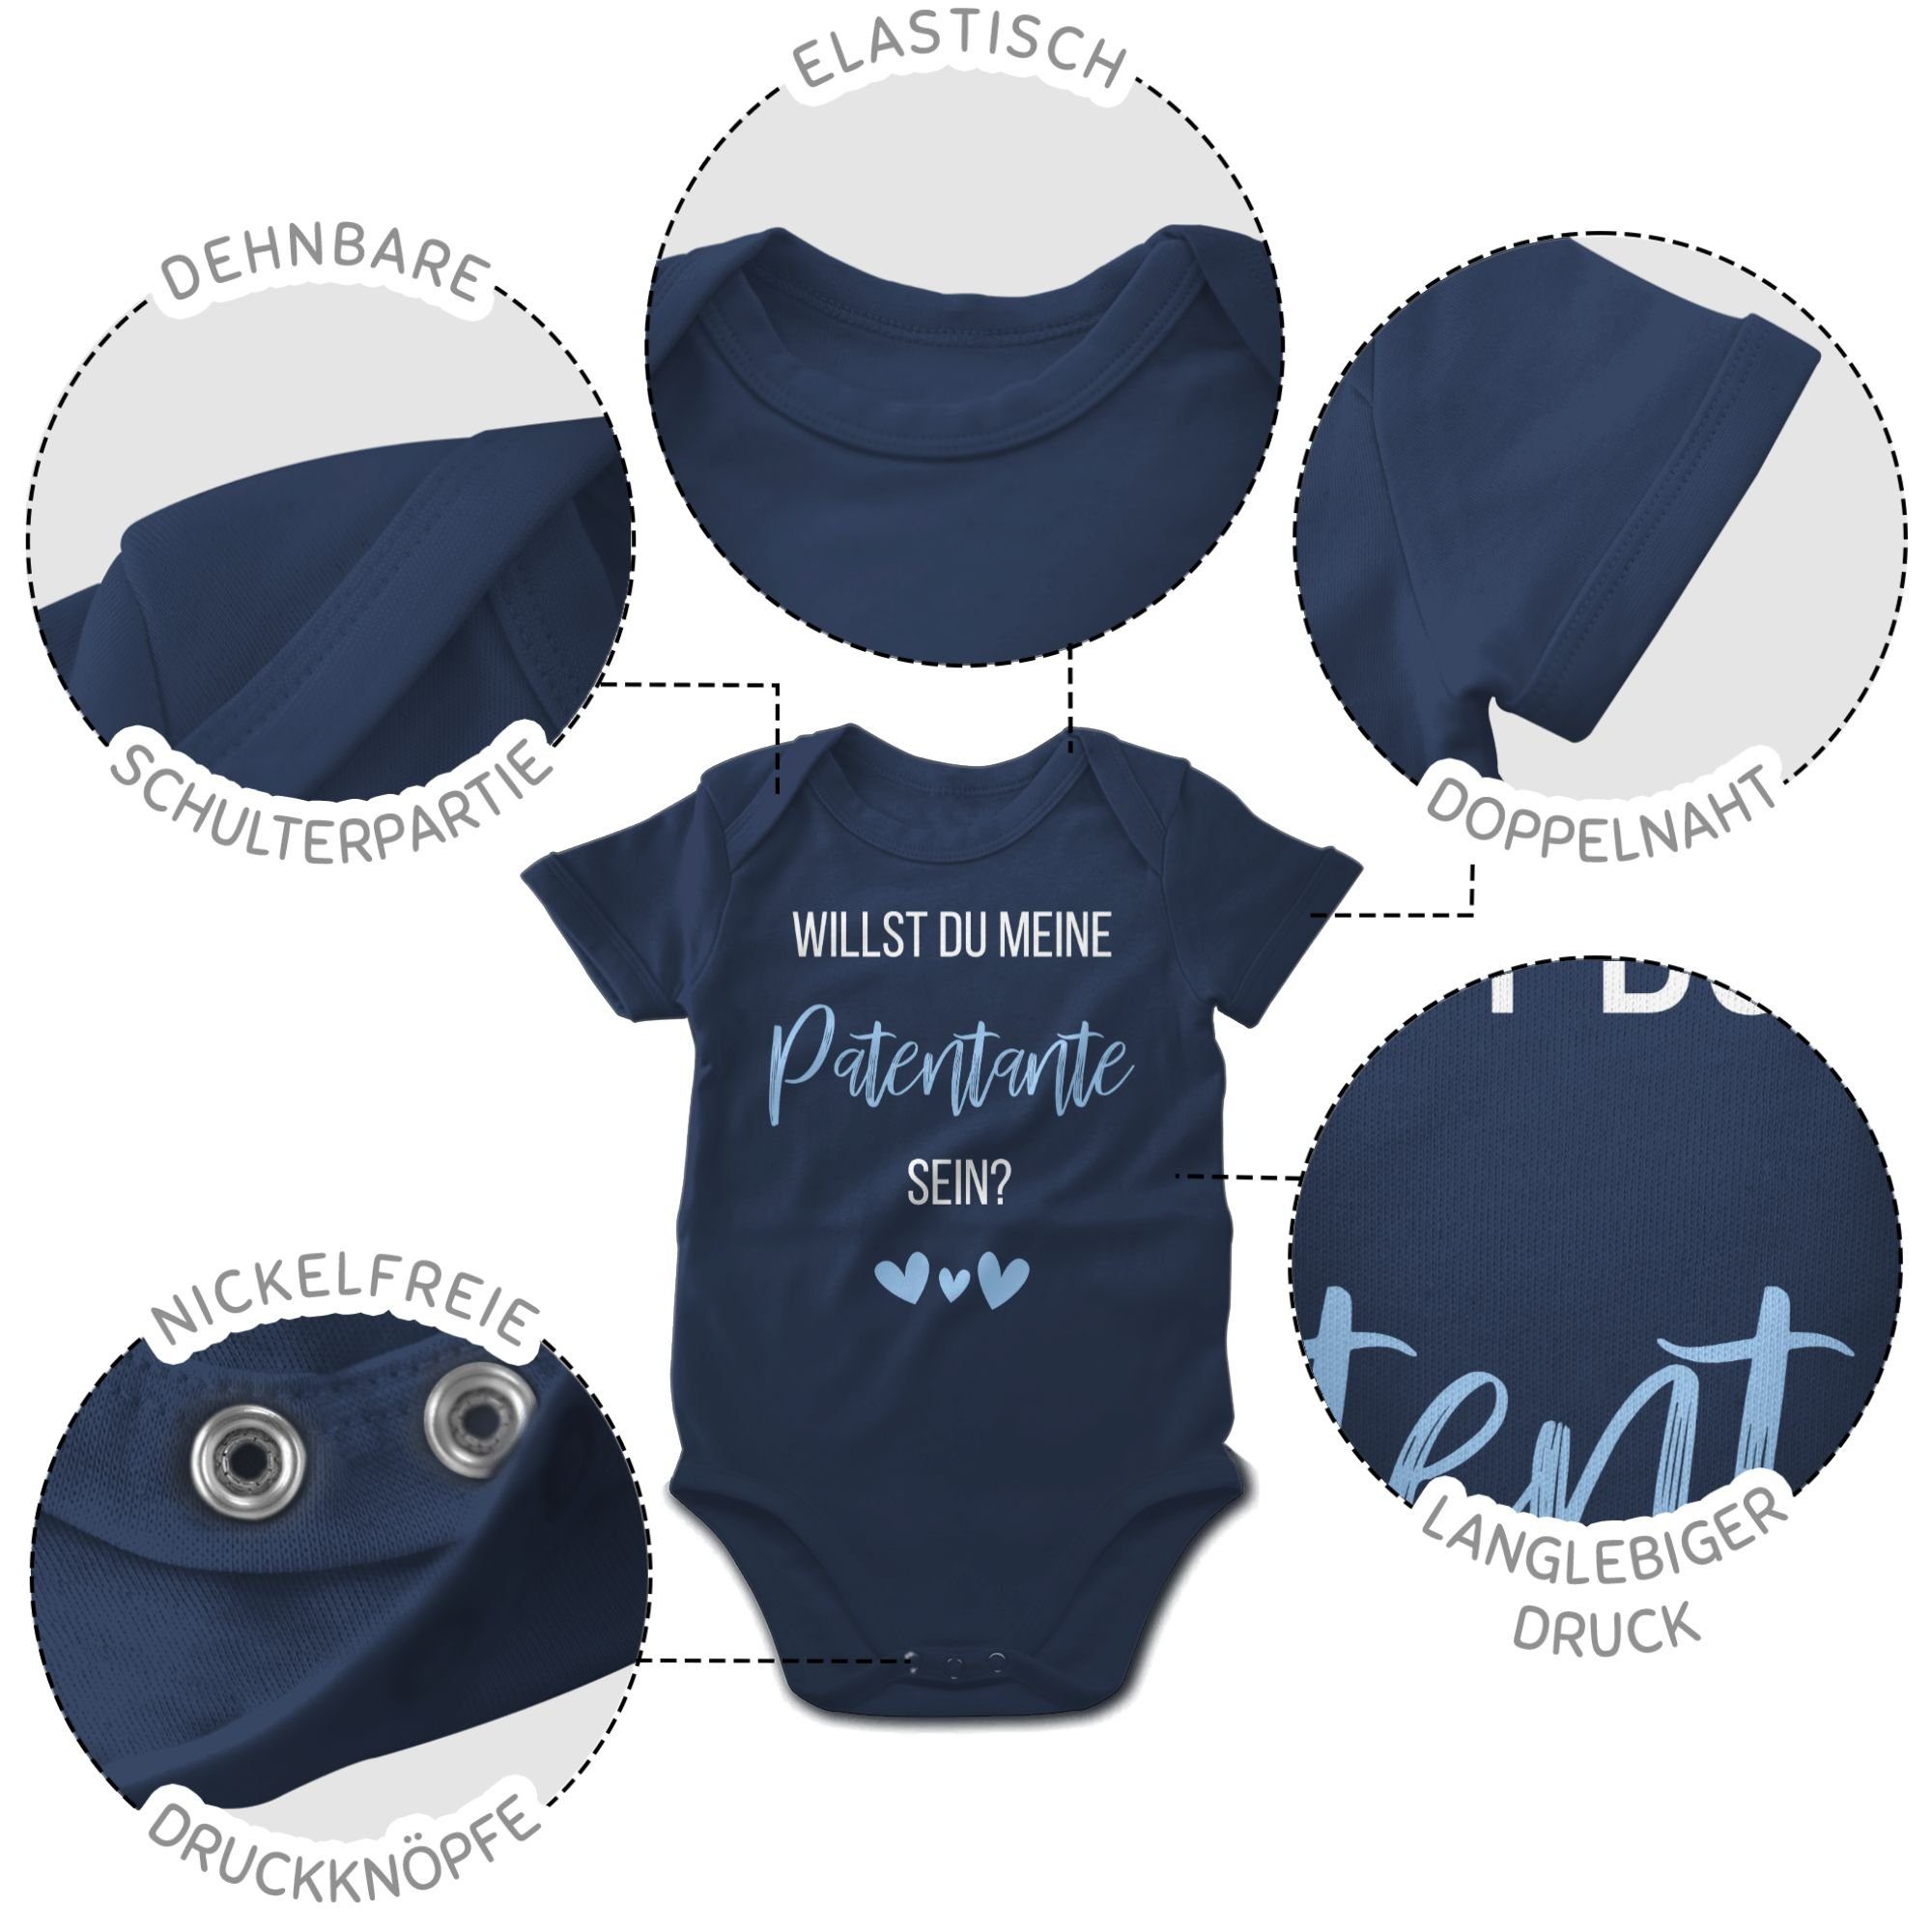 Shirtracer Shirtbody du Babyblau Patentante Baby Willst Navy 1 sein? meine Patentante Blau